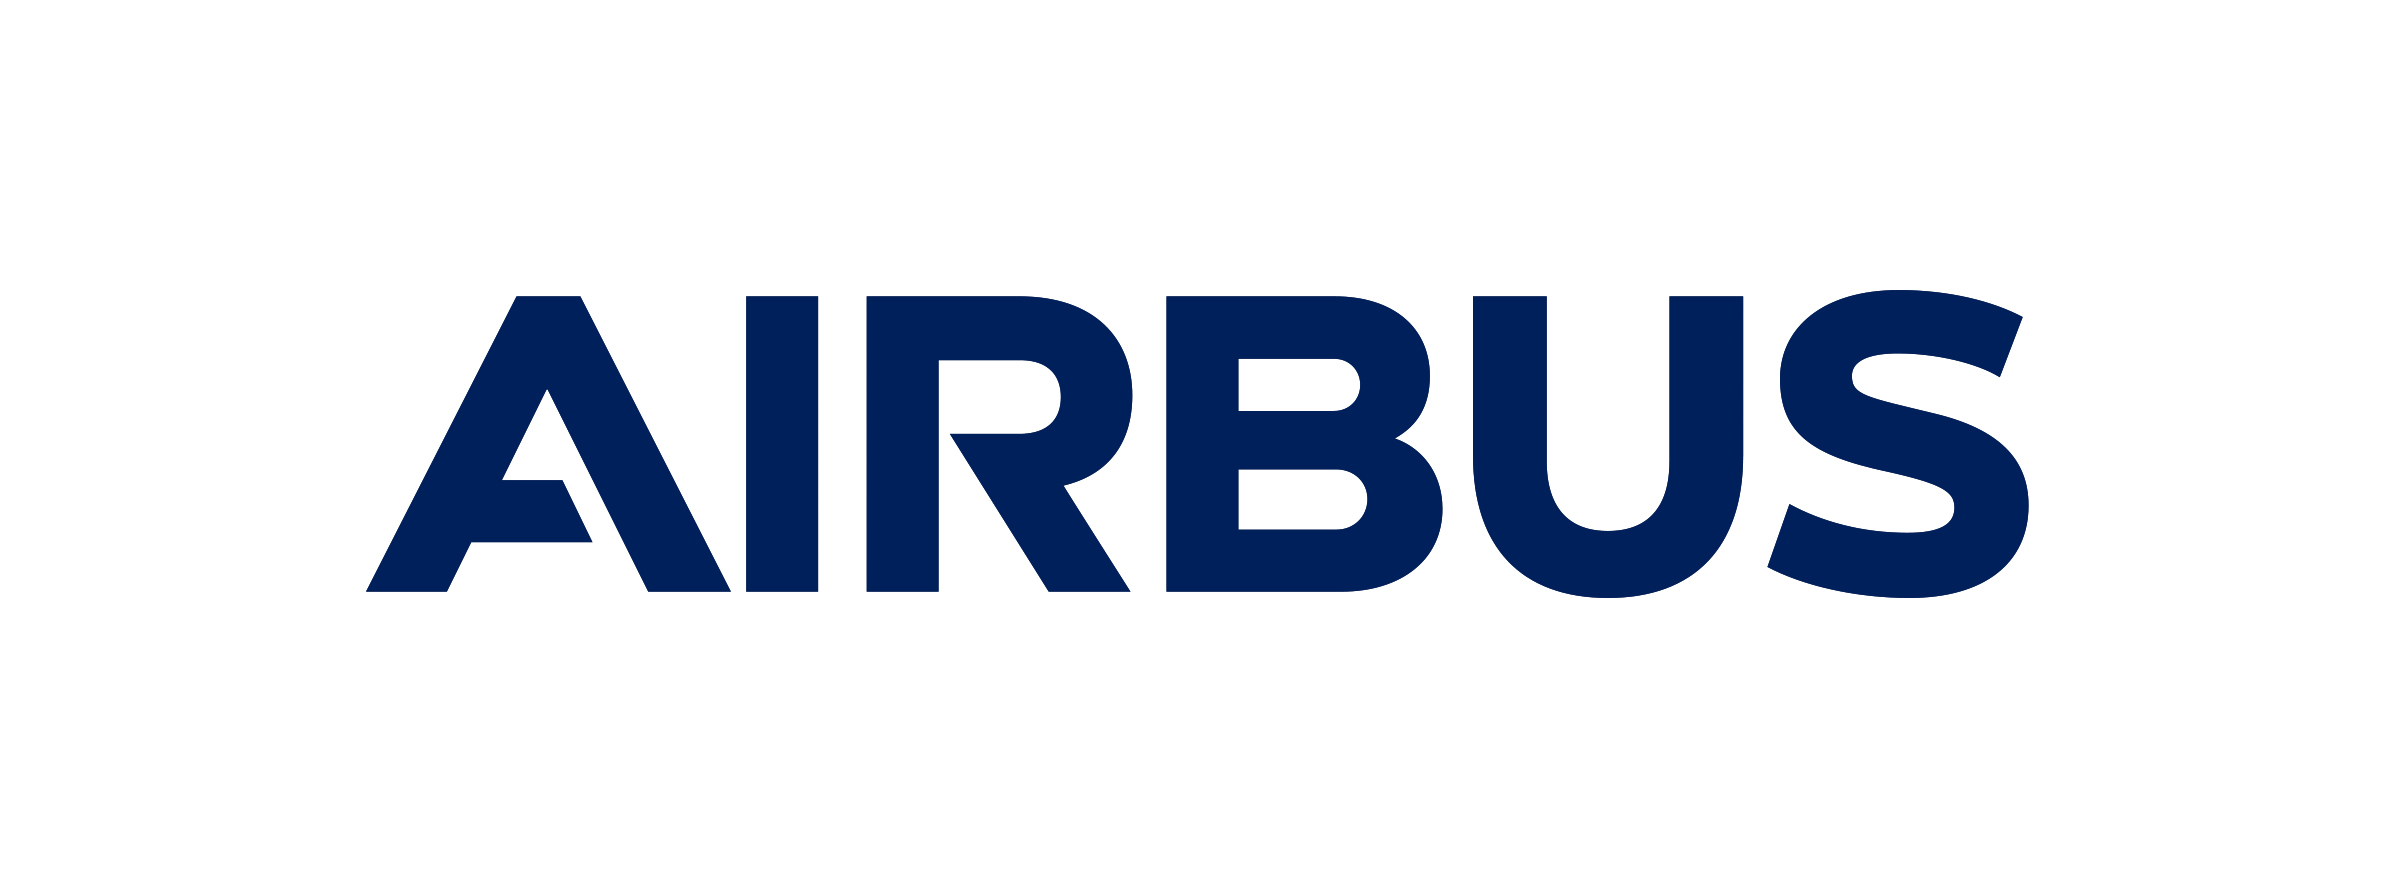 Airbus Apprentice Open Day - Saturday 30th November 2019